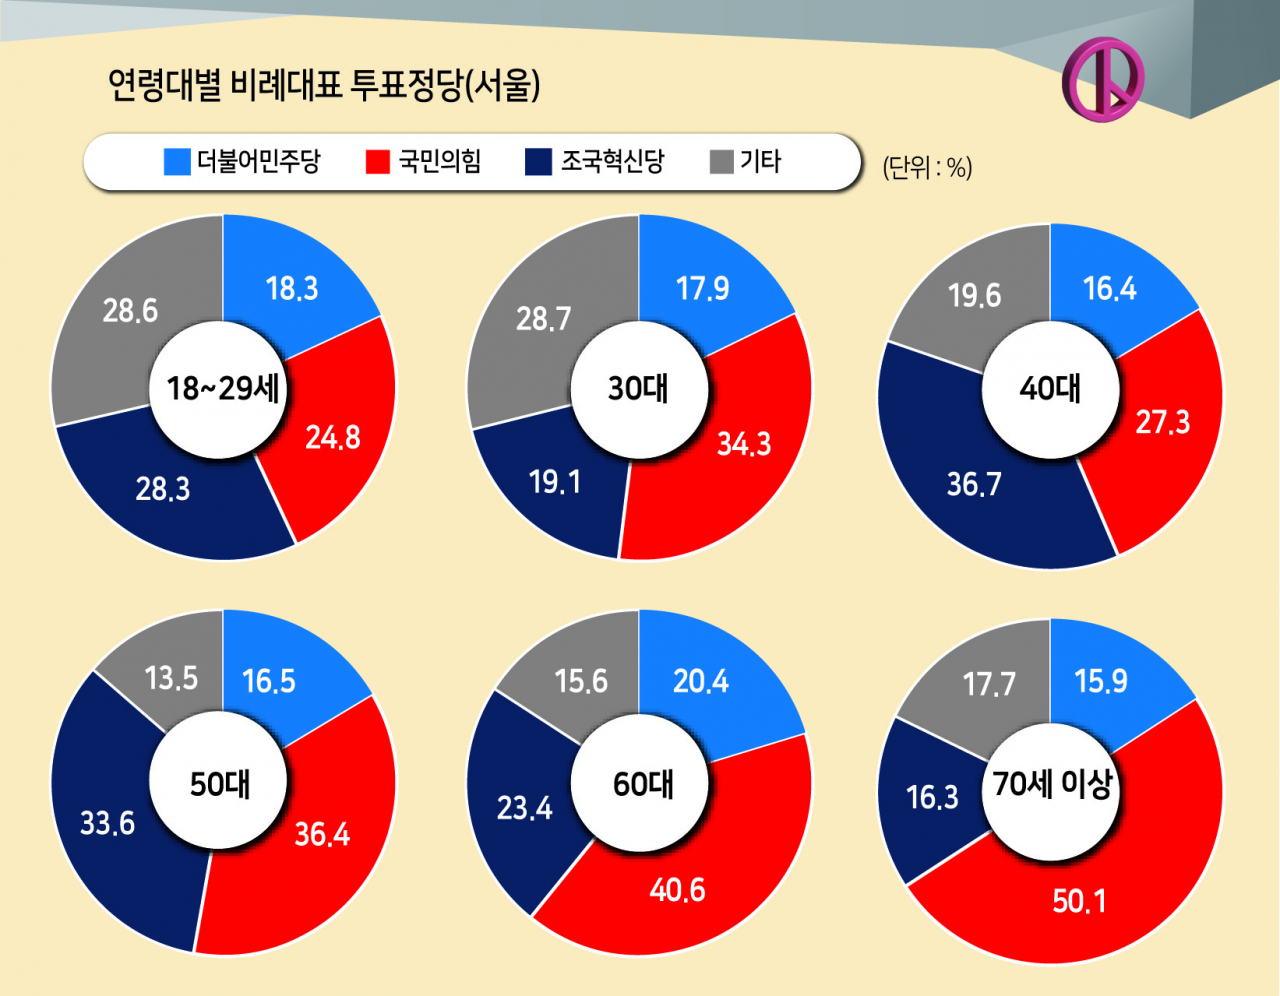 4050 서울민심은 조국혁신당을 택했다…40대 36.7%로 압도적 1위[조원씨앤아이]